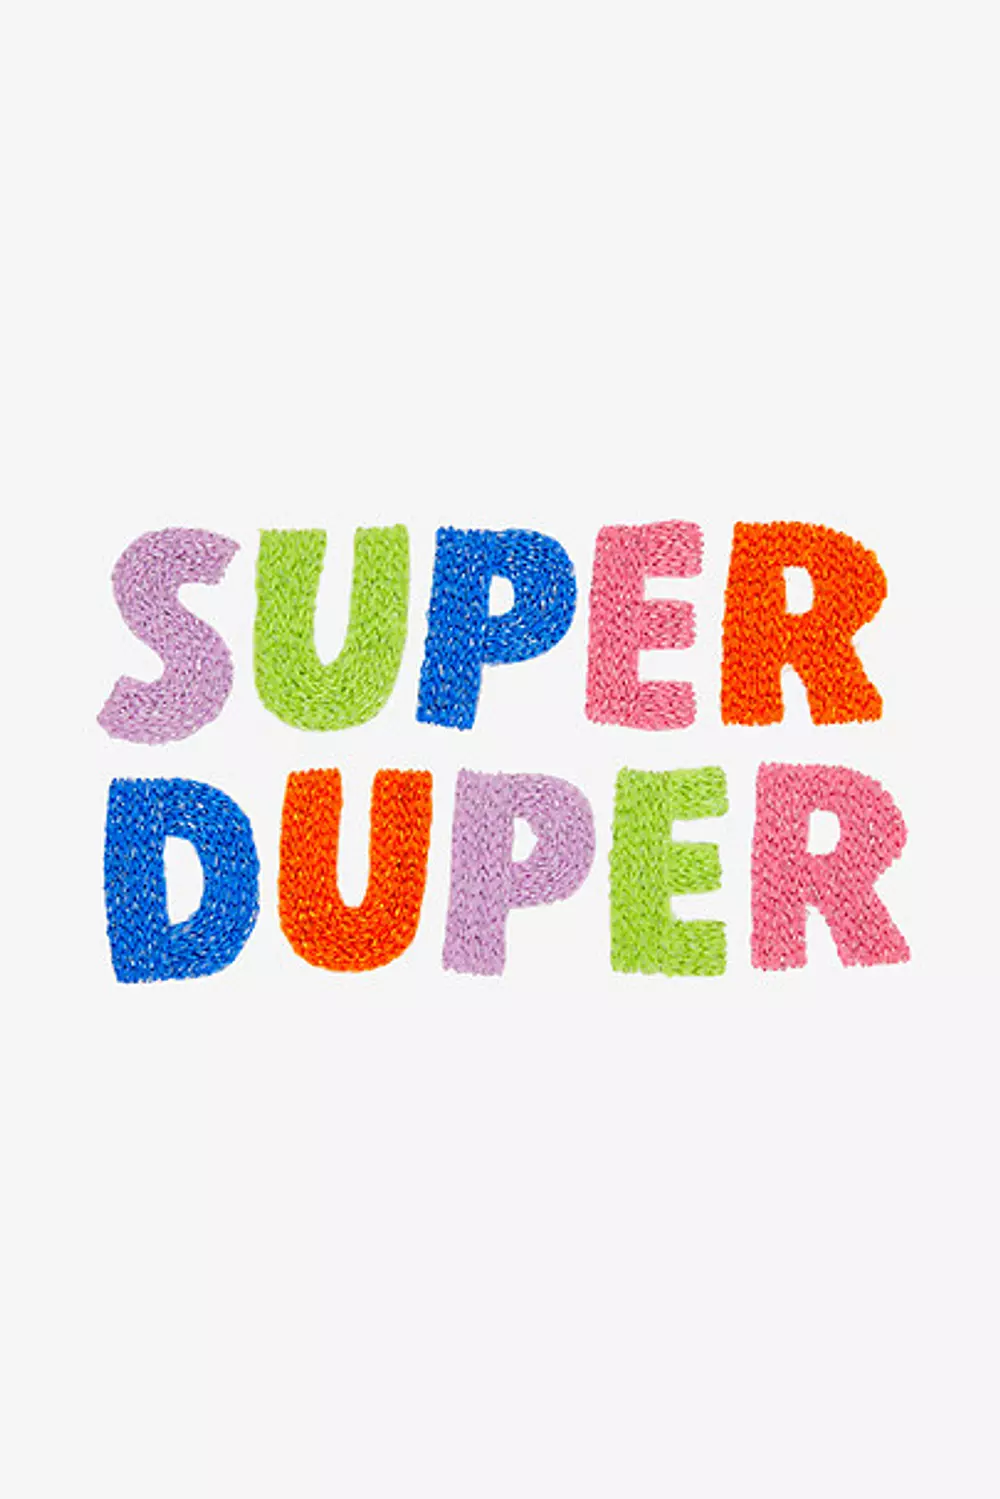 Super Duper - DMC